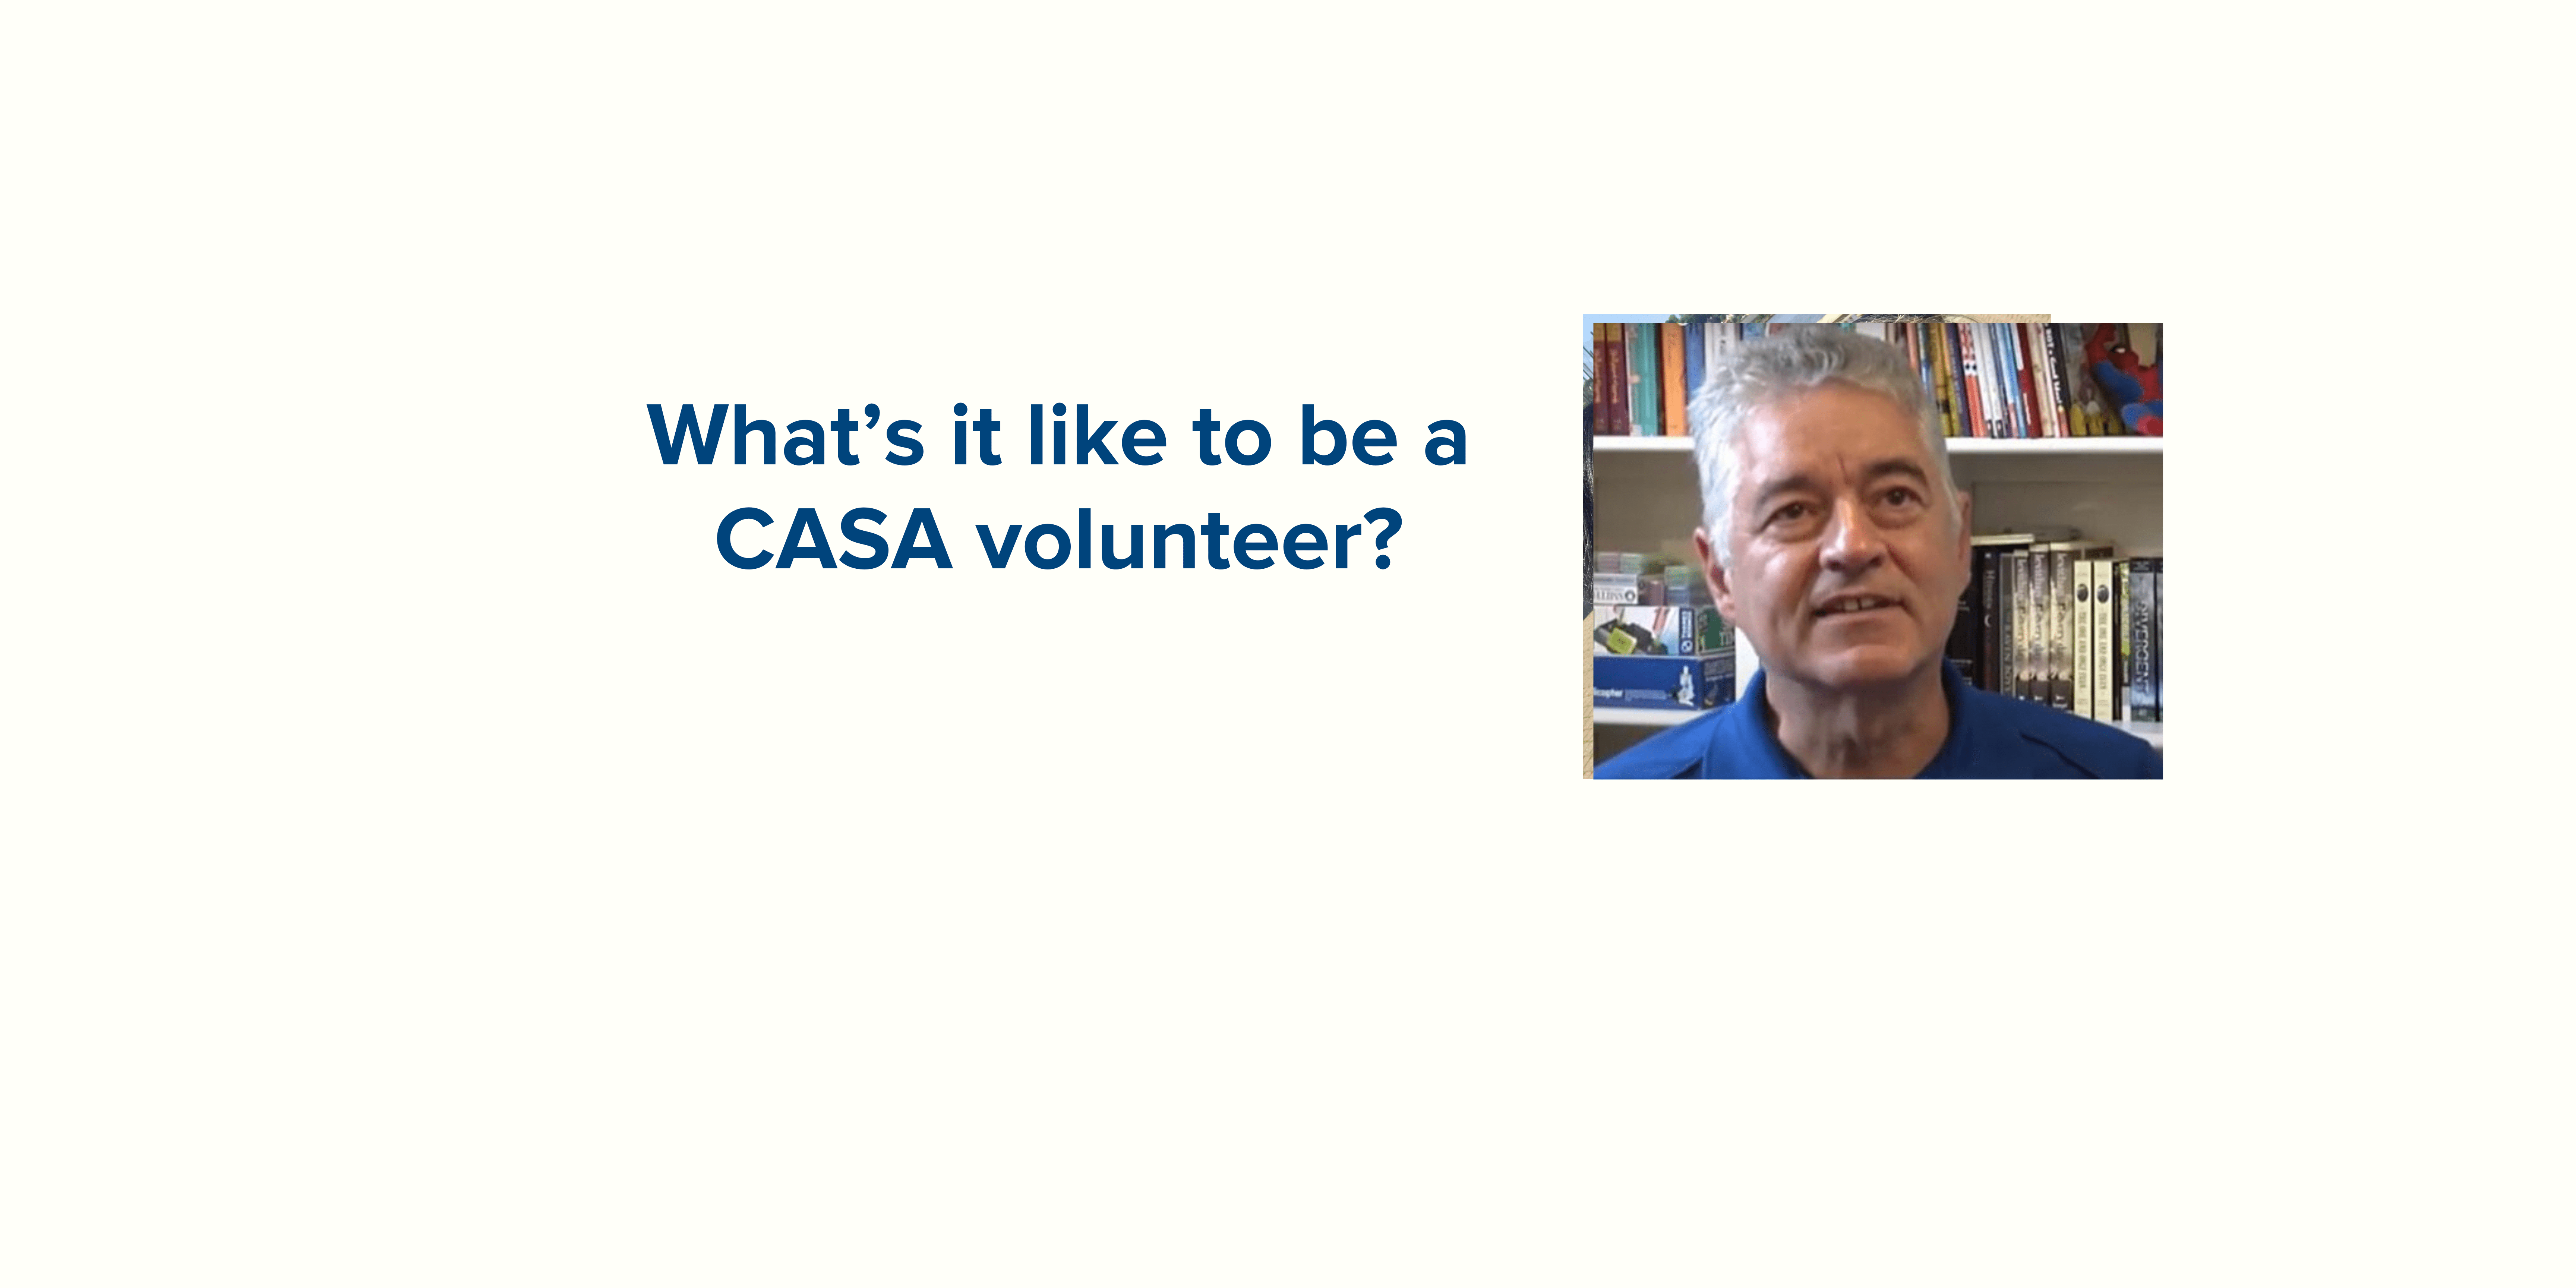 Meet CASA Volunteer Tony who will share his experience